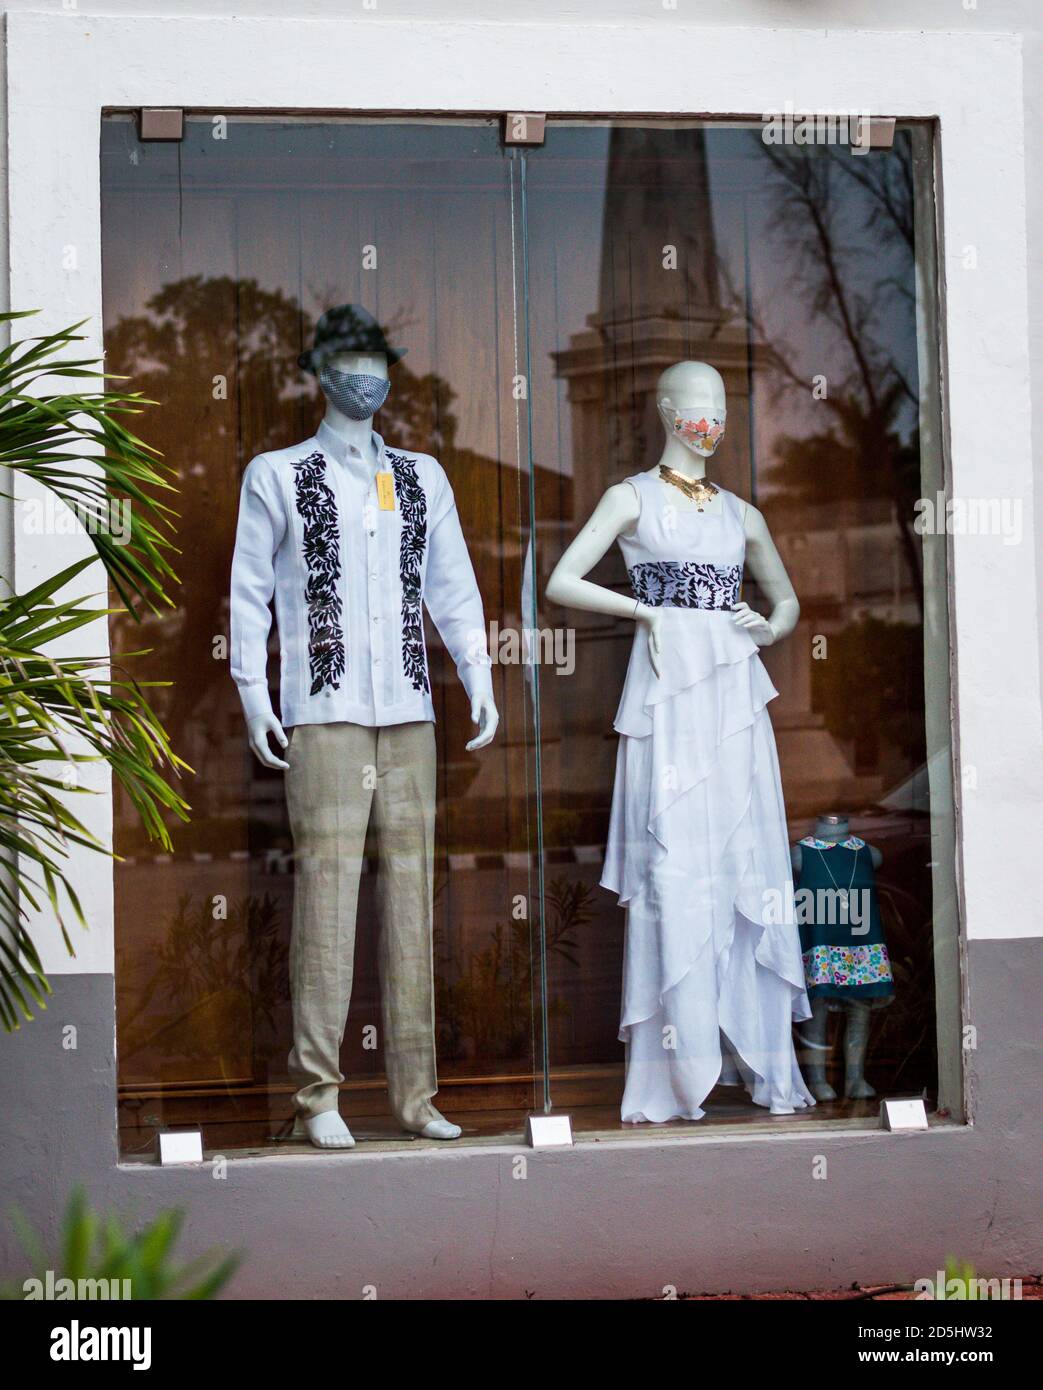 Covid 19 Pandemic in Messico, nuove tendenze normali. Boutique a Merida, Yucatan, manichini che indossano moda messicana e maschere viso in una zona turistica. Foto Stock